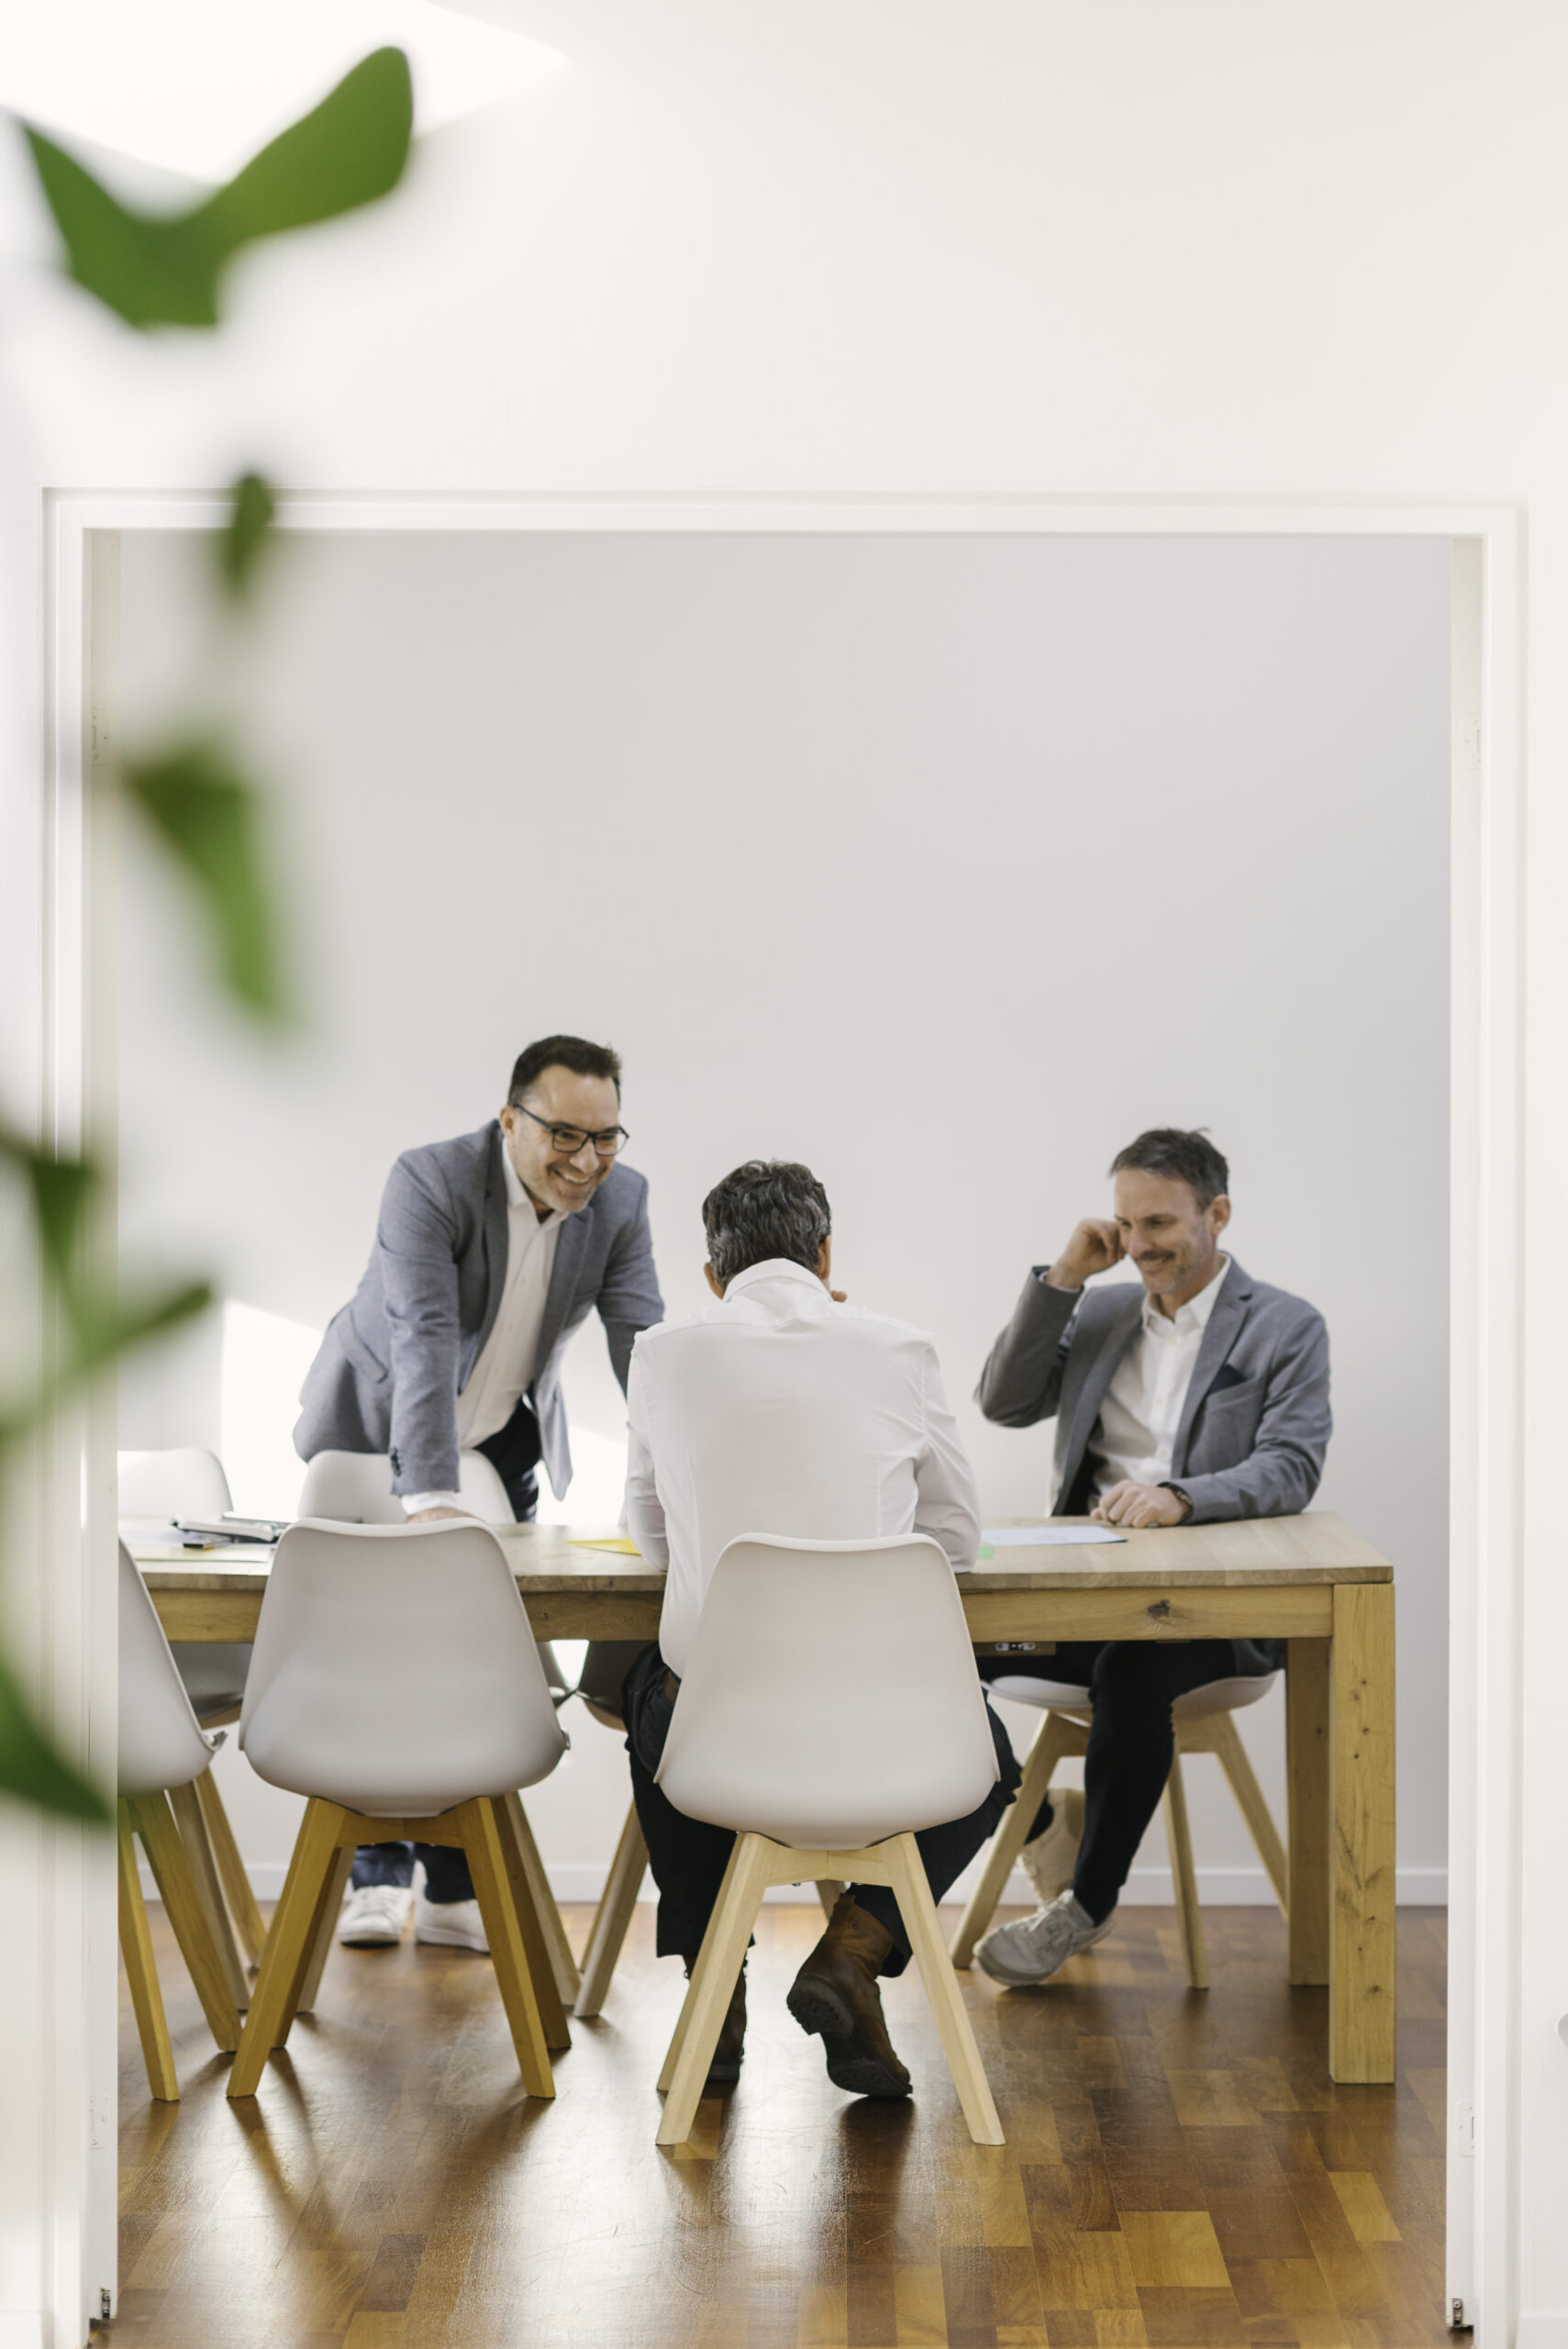 Bild von drei Männern im Sitzungszimmer. Einer steht und lacht. Die beiden anderen Sitzen am Sitzungstisch.